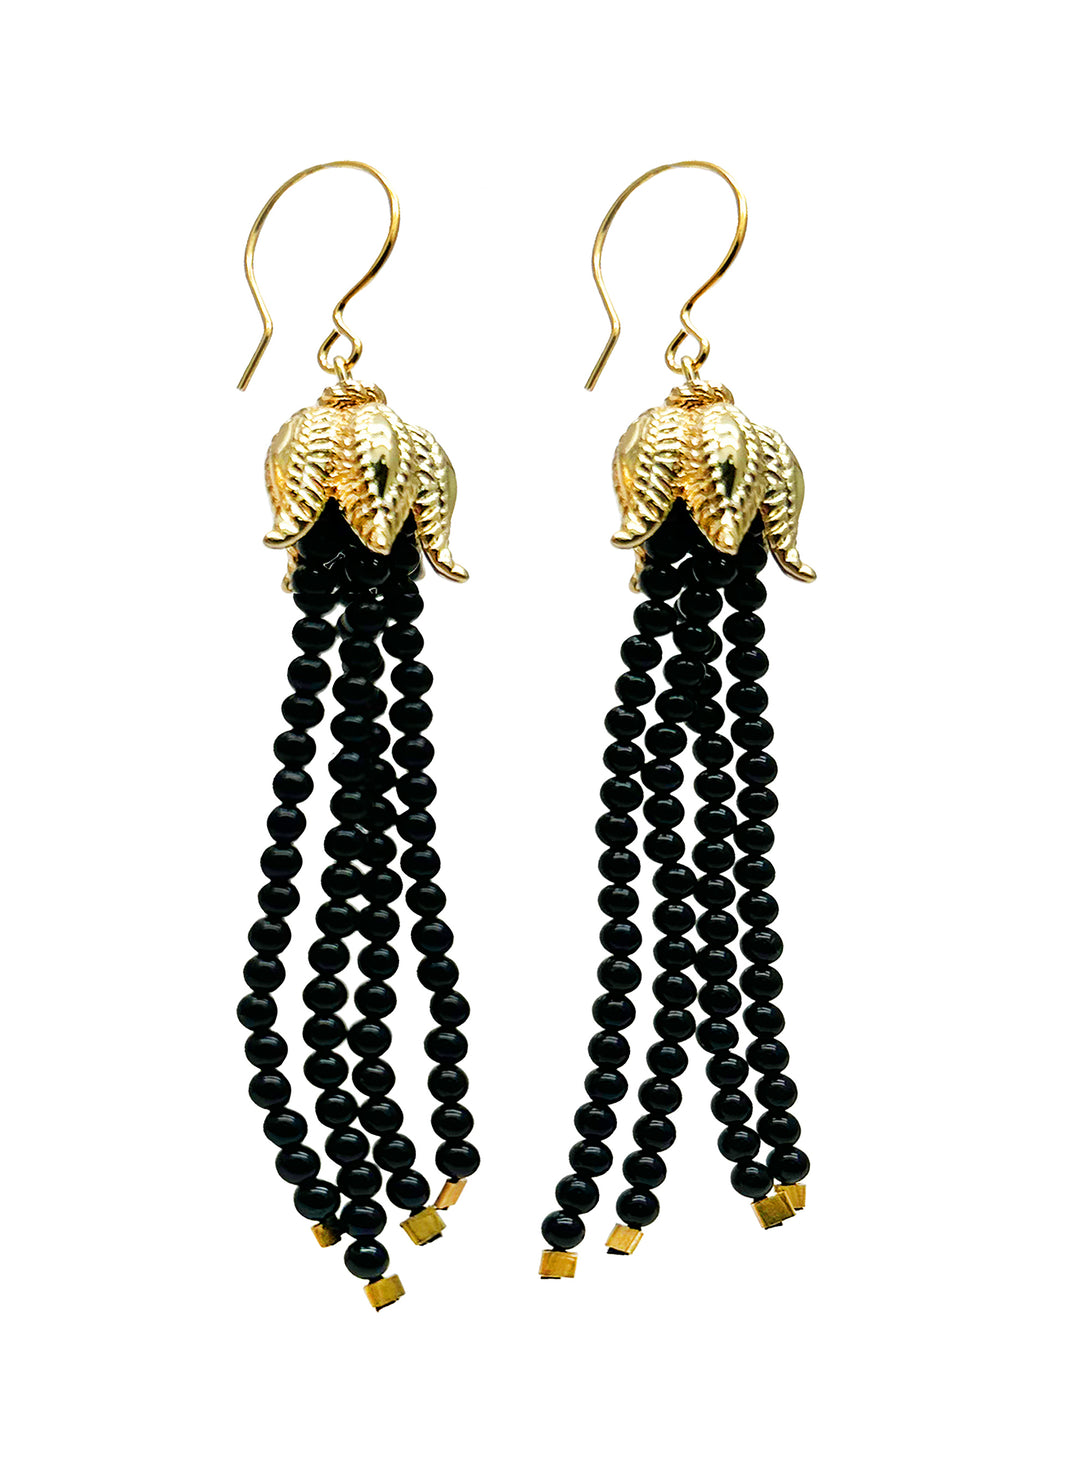 Black Obsidian Beaded Tassel Earrings JE046 - FARRA